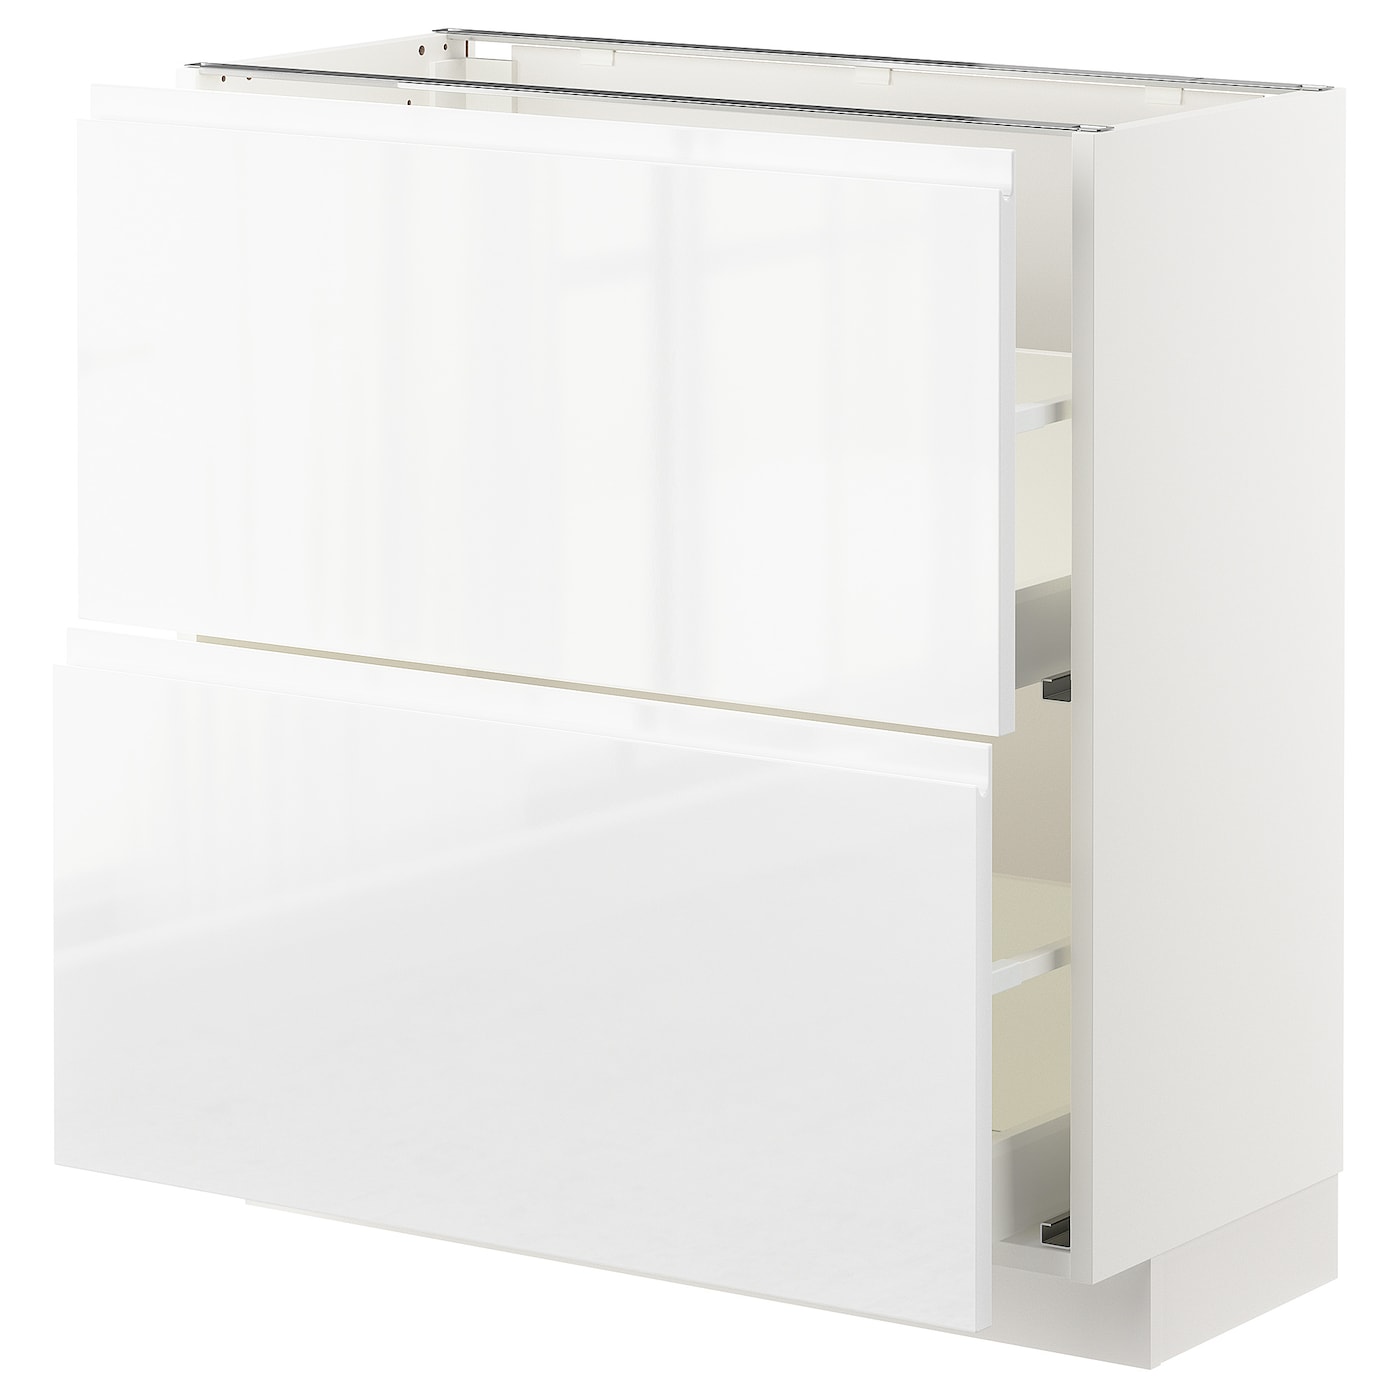 Напольный шкаф - METOD / MAXIMERA IKEA/ МЕТОД/ МАКСИМЕРА ИКЕА,  88х80 см, белый